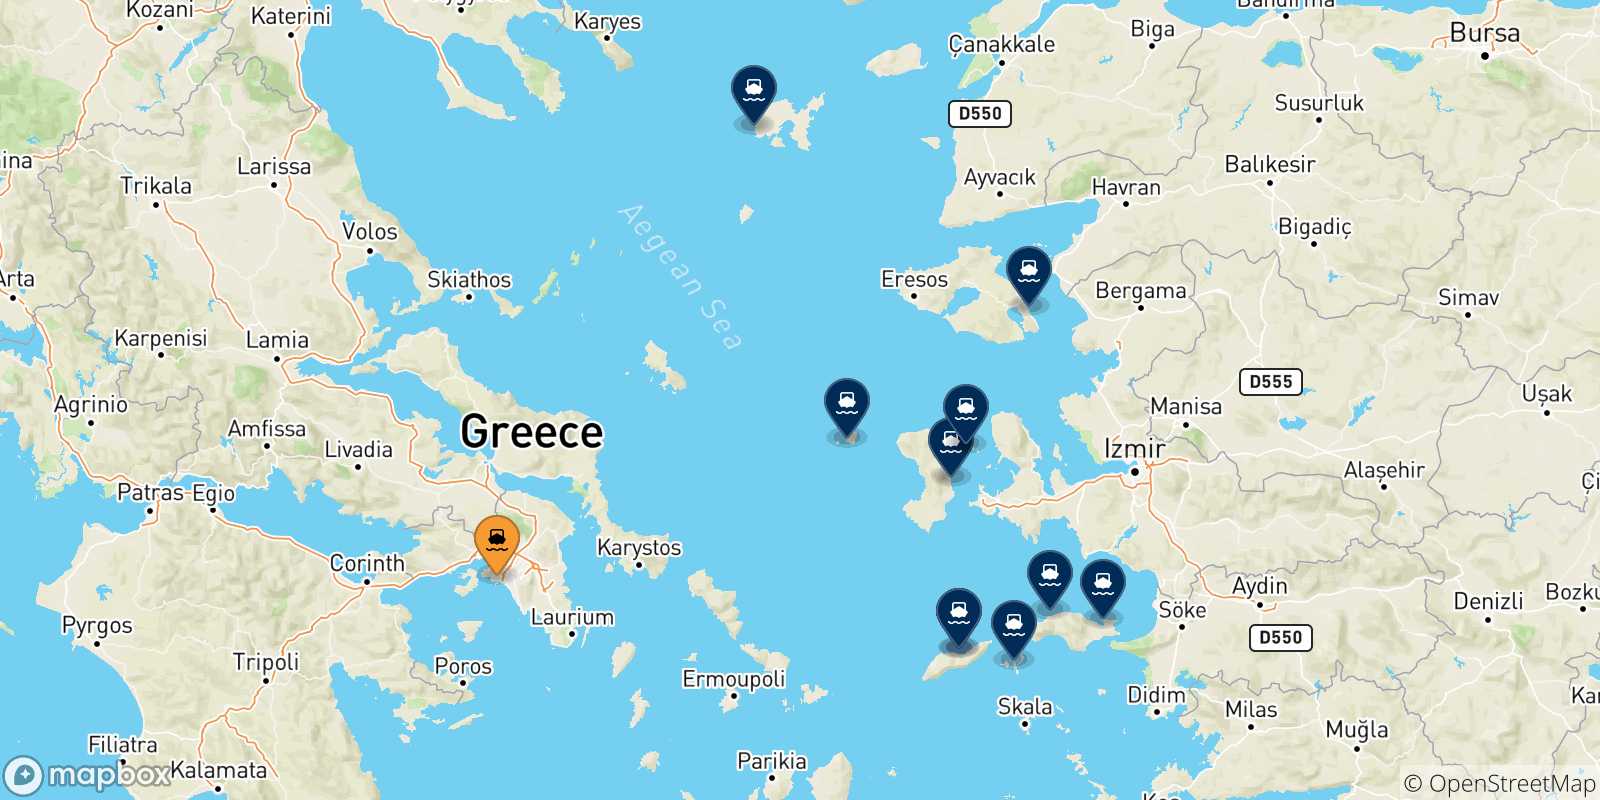 Mappa delle possibili rotte tra Pireo e le Isole Egeo Nord Orientale